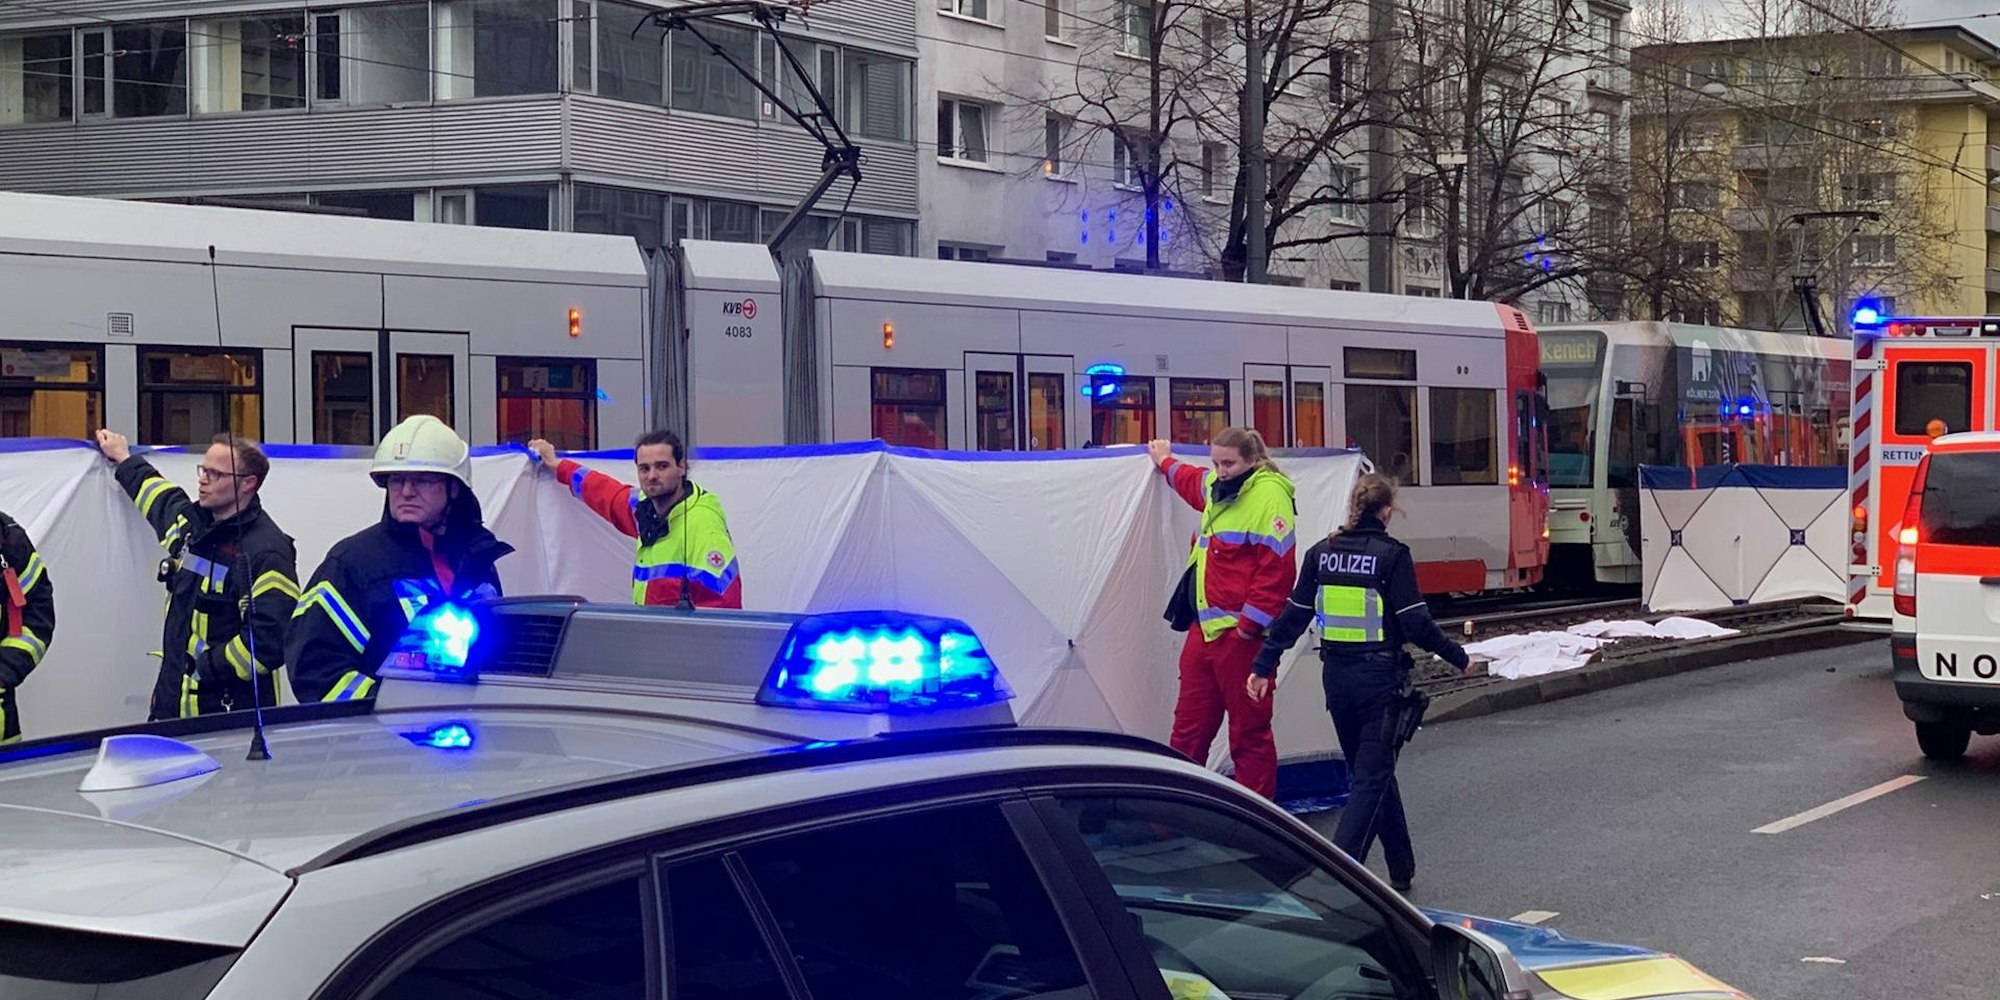 Am Barbarossaplatz ist eine Person von einer KVB-Bahn erfasst und getötet worden.